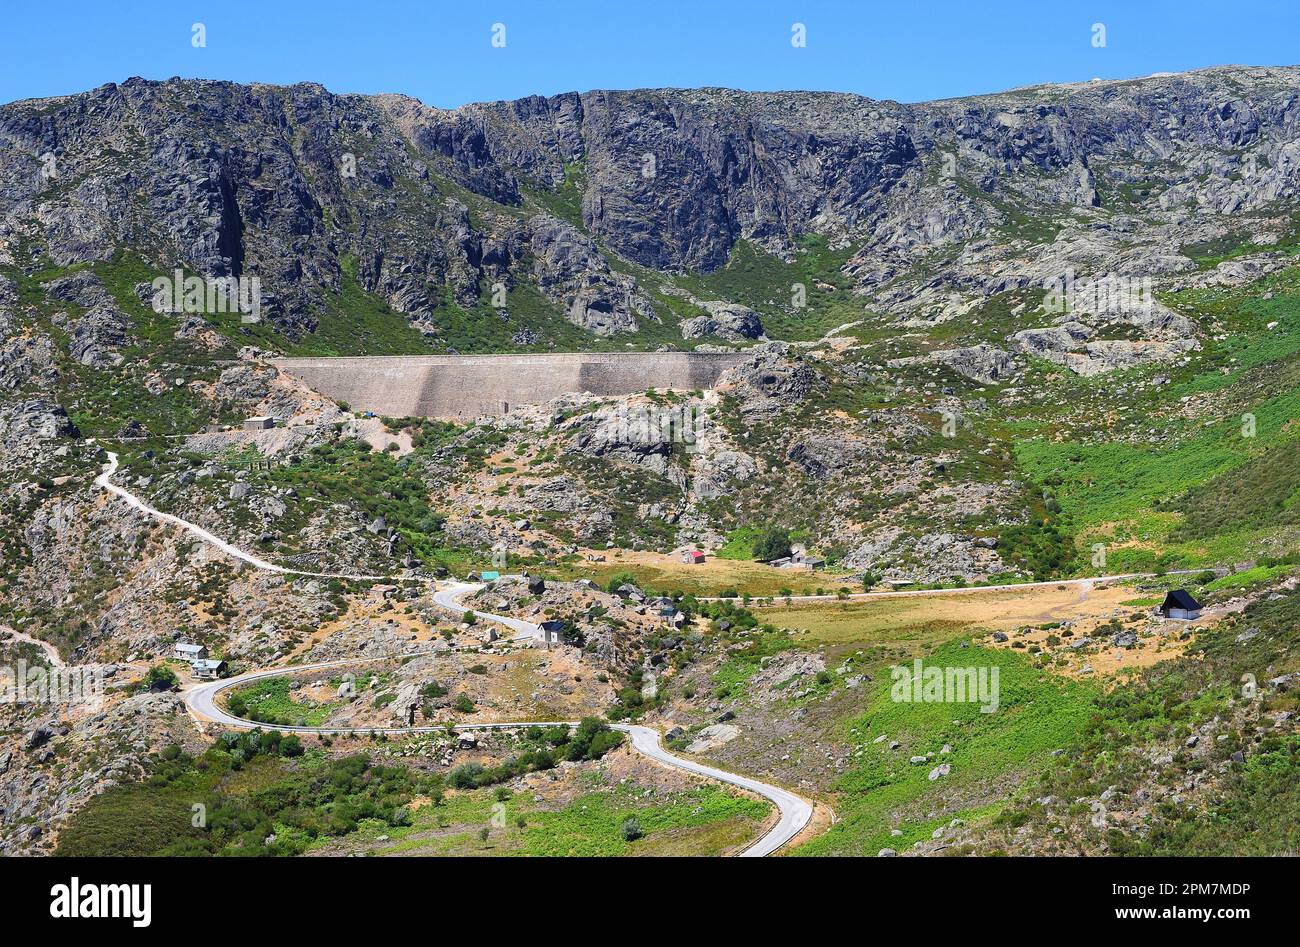 Serra da Estrela es una cadena montañosa de granito en el norte central continental de Portugal. Es un Parque Natural. Foto de stock